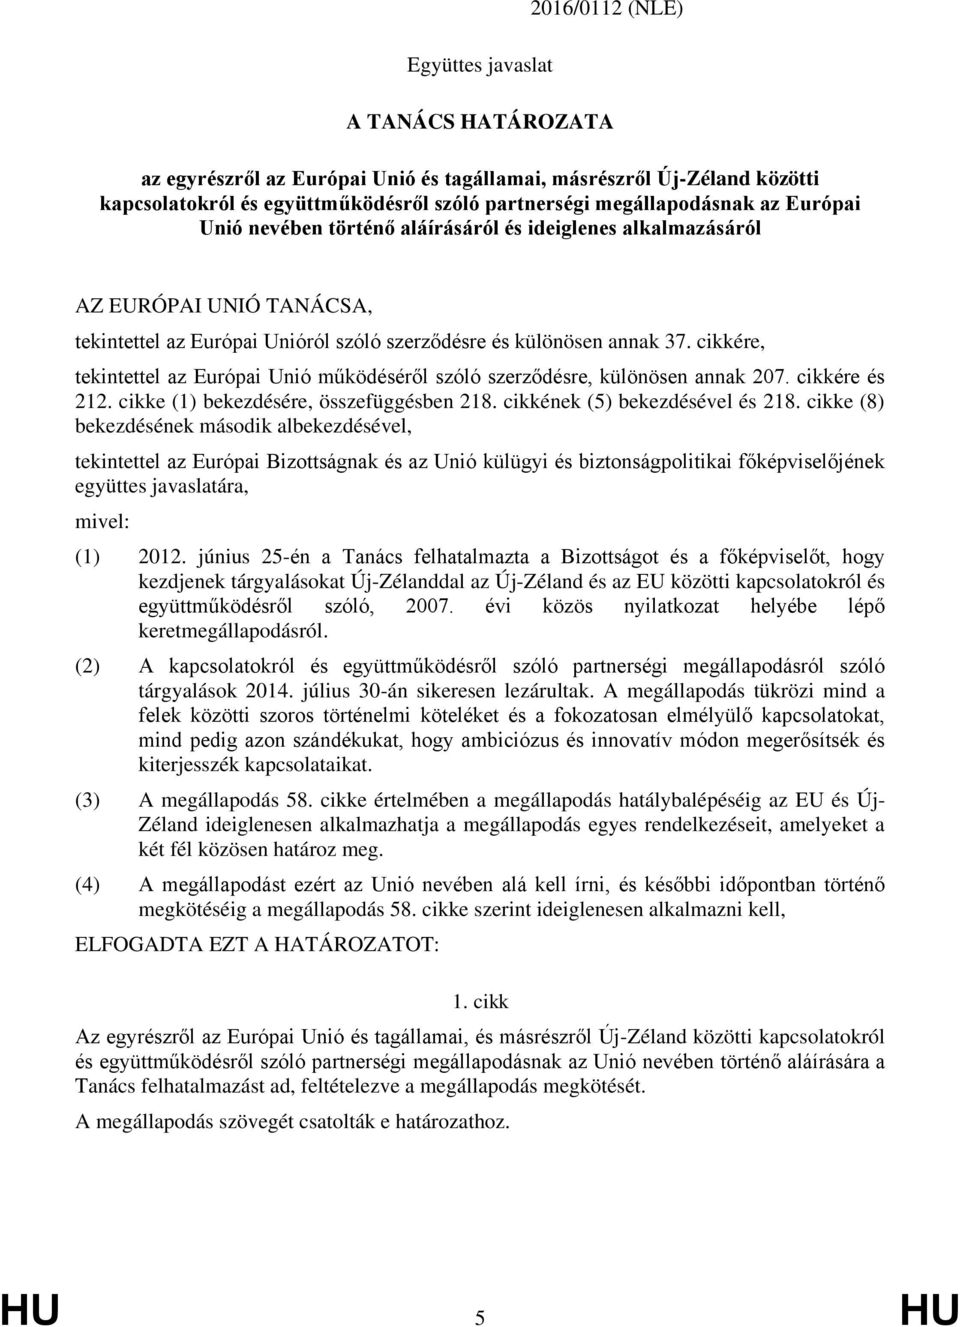 cikkére, tekintettel az Európai Unió működéséről szóló szerződésre, különösen annak 207. cikkére és 212. cikke (1) bekezdésére, összefüggésben 218. cikkének (5) bekezdésével és 218.